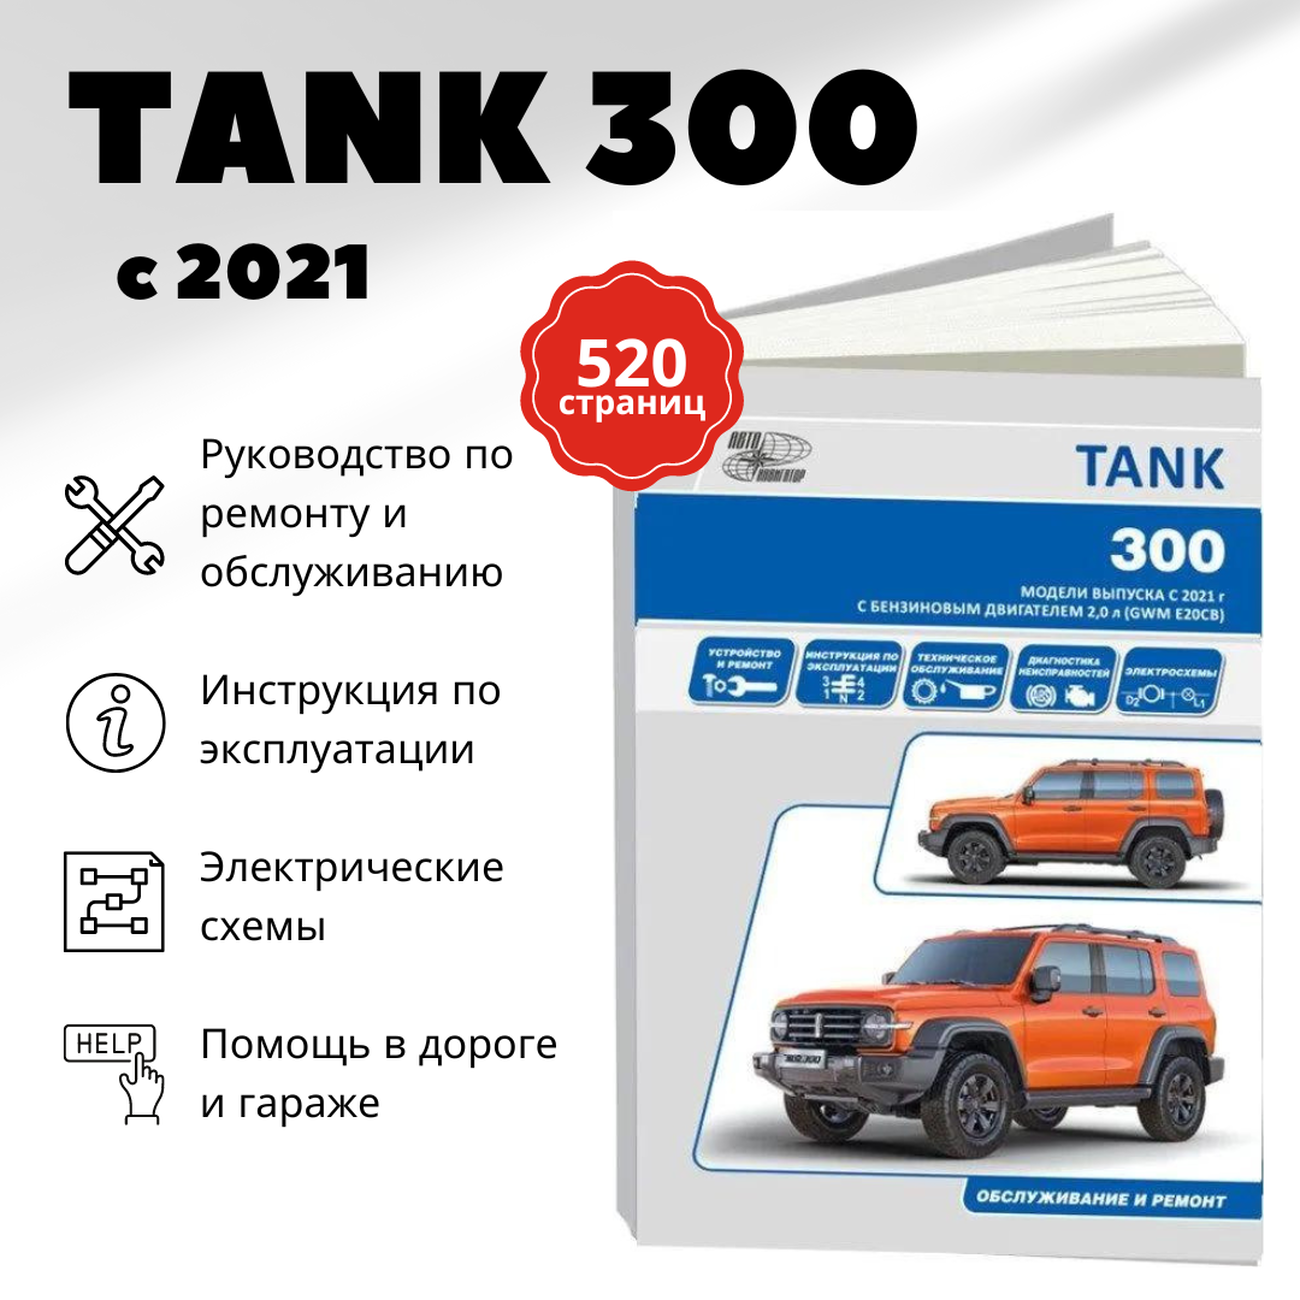 Автокнига: руководство / инструкция по ремонту и эксплуатации TANK 300 (танк 300) с 2021 года выпуска, 978-598410-144-8, издательство Автонавигатор